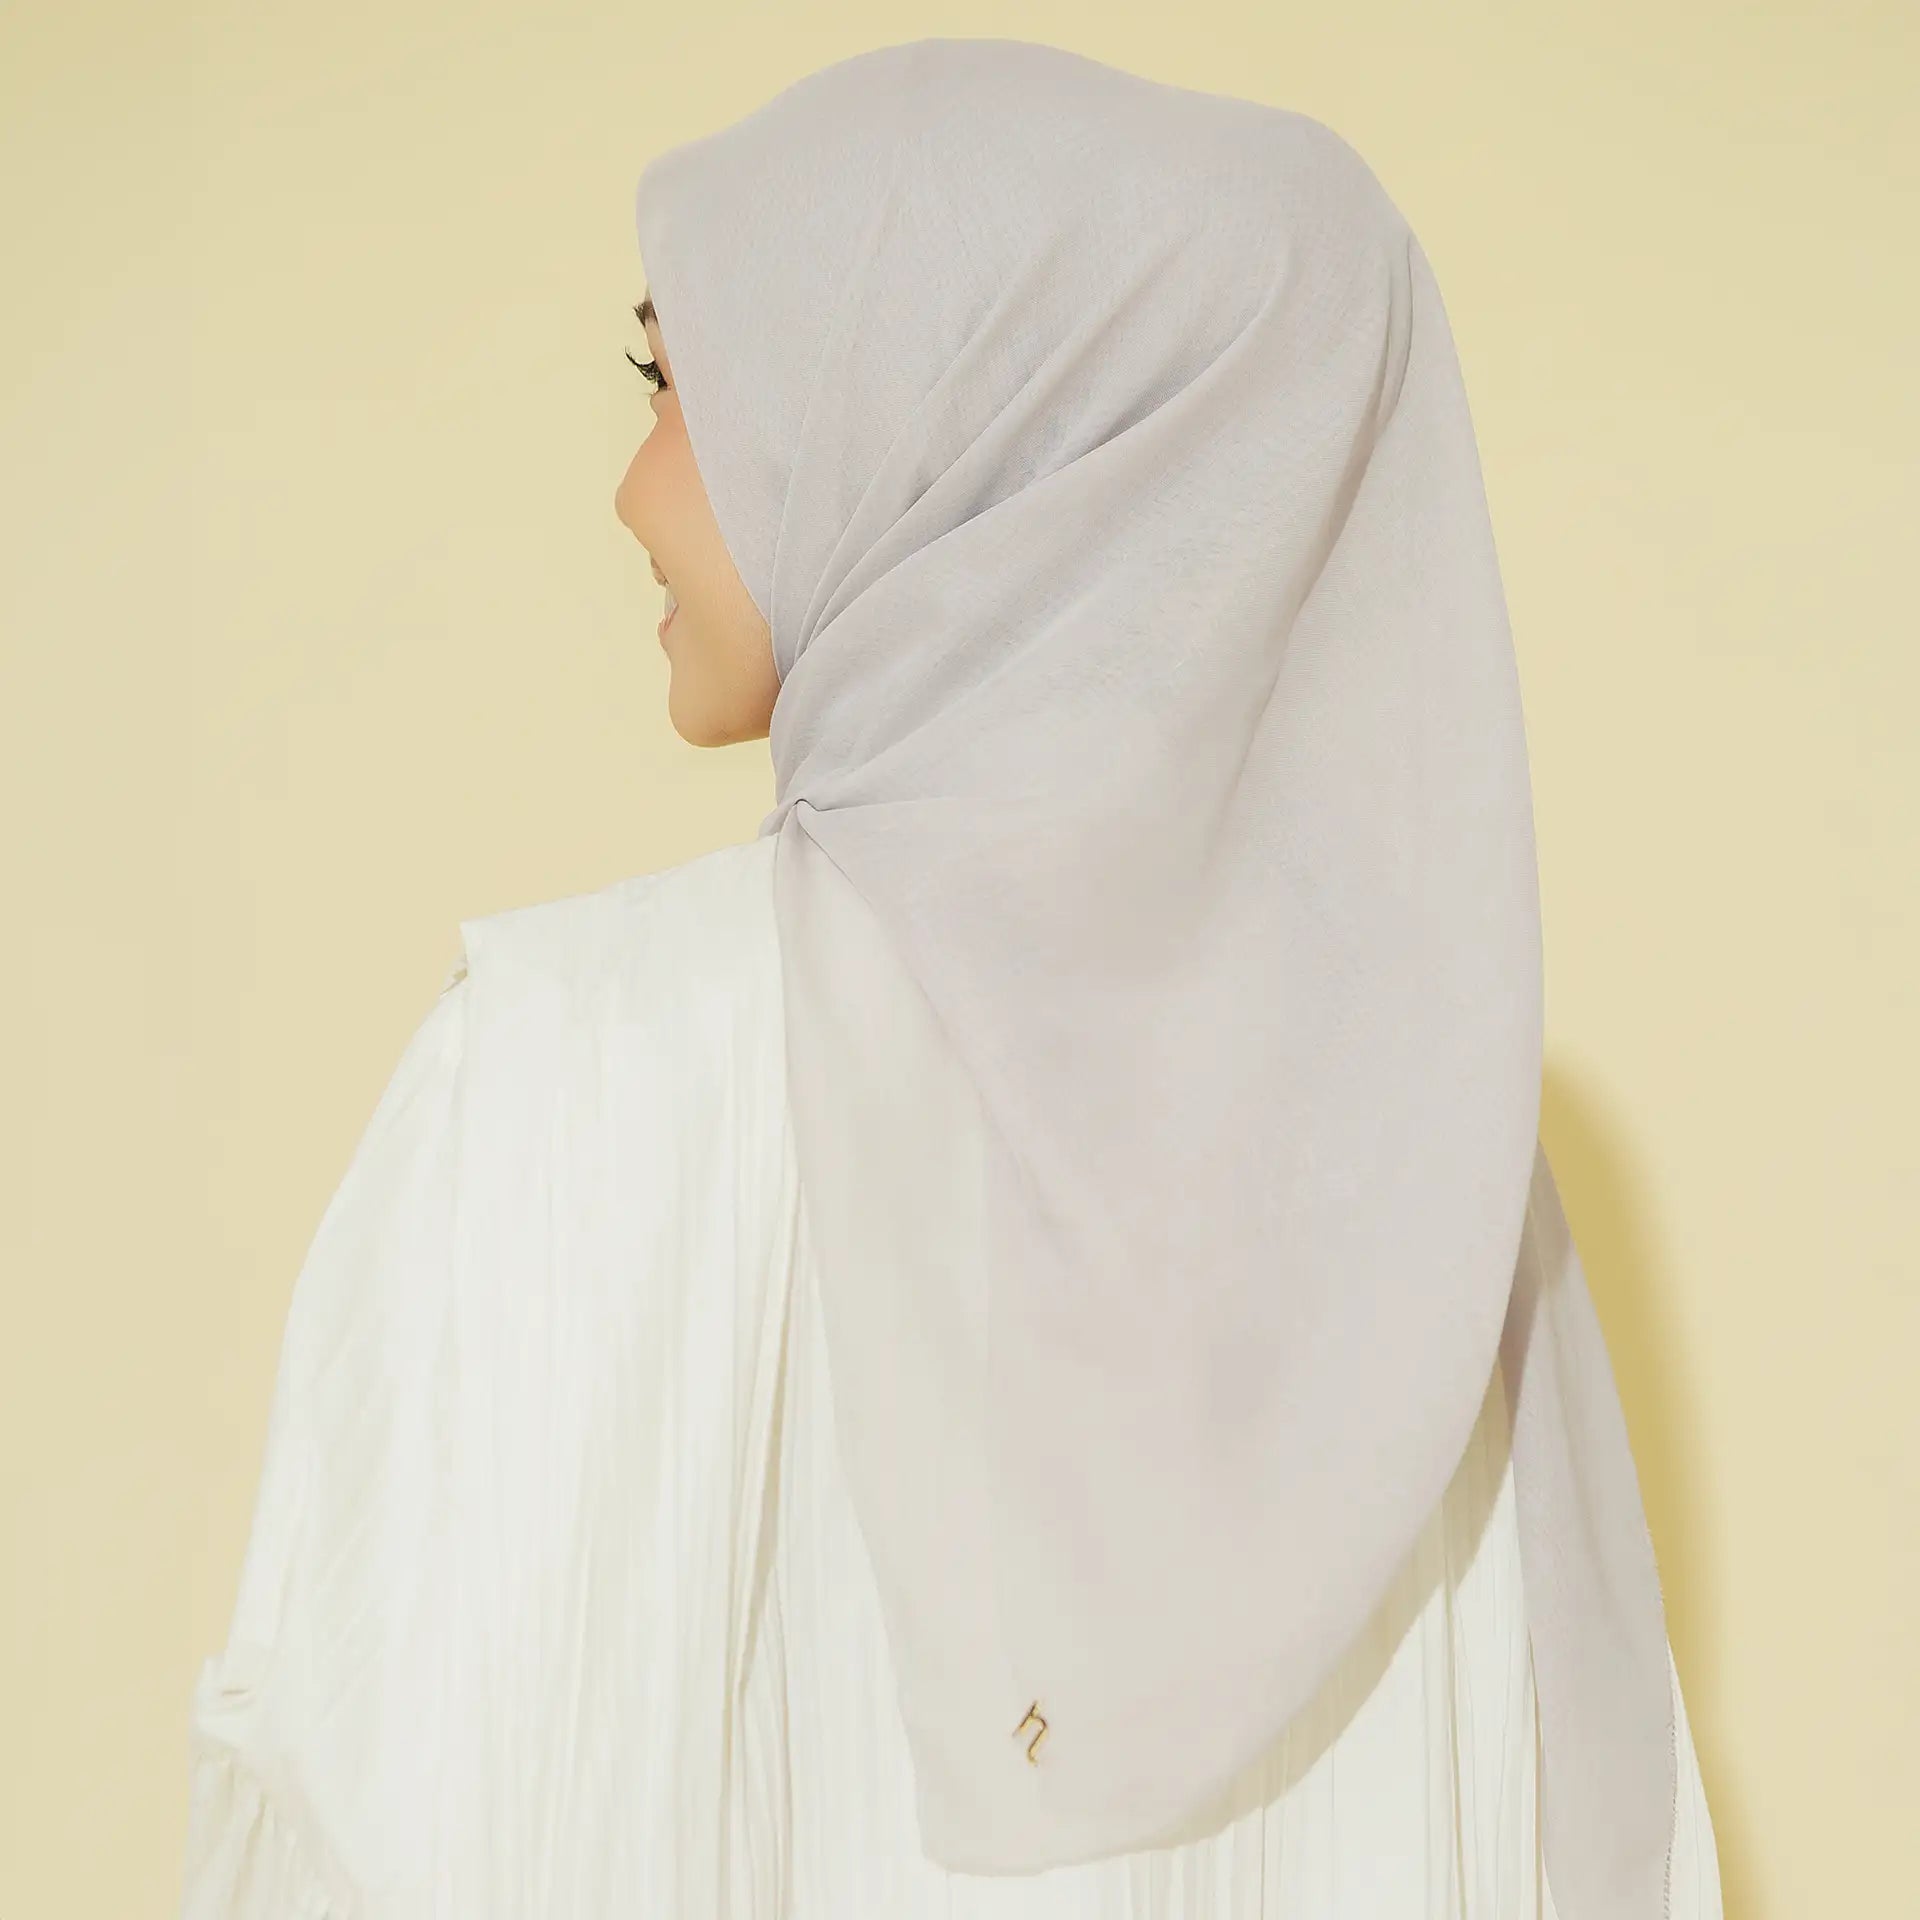 Alea Grey Tops | HijabChic